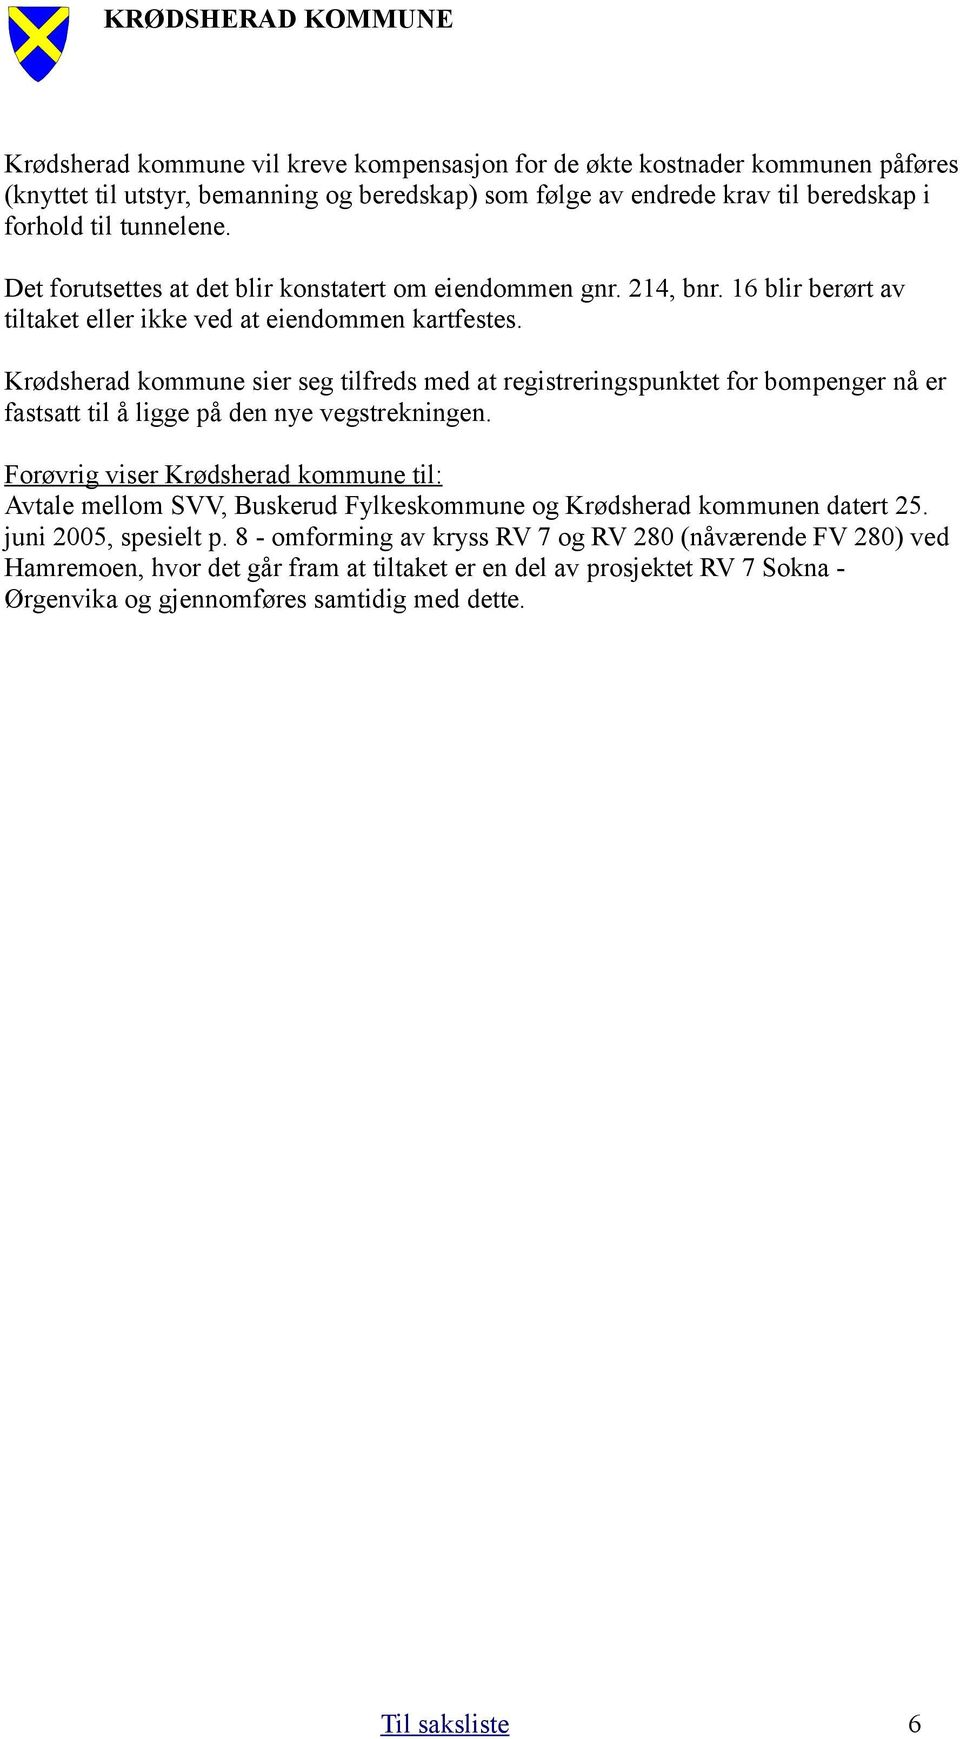 Krødsherad kommune sier seg tilfreds med at registreringspunktet for bompenger nå er fastsatt til å ligge på den nye vegstrekningen.